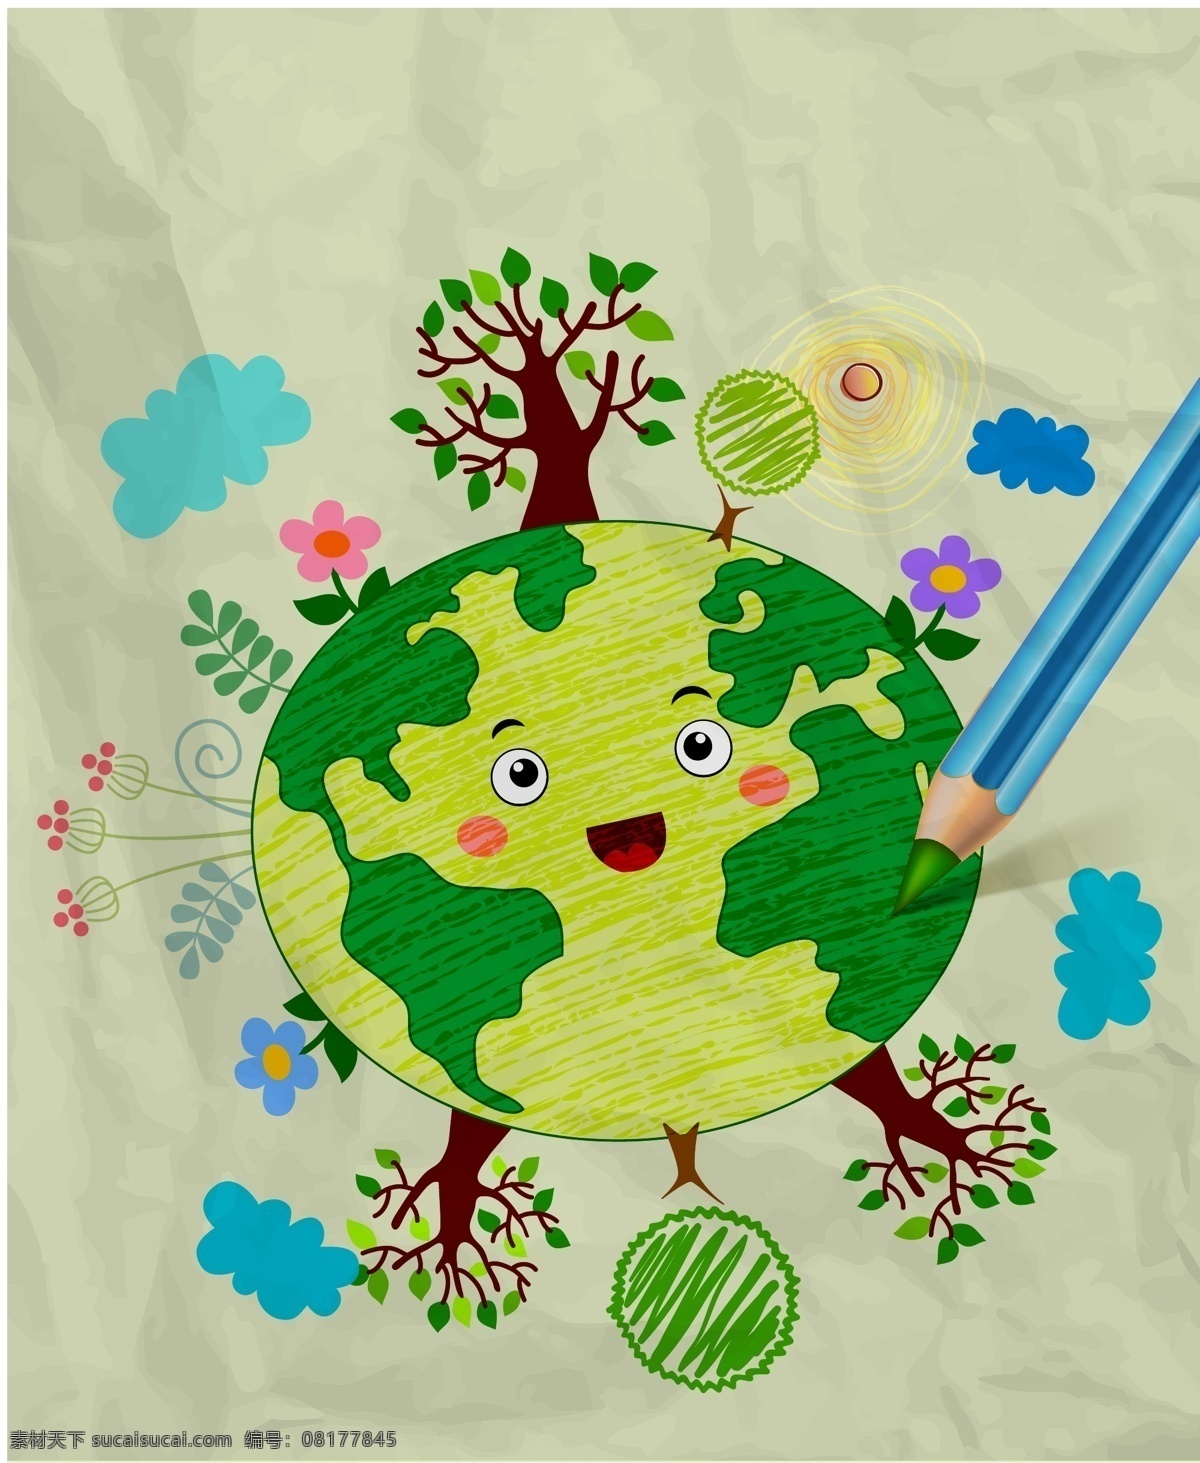 手绘 地球 绿色环保 儿童 插画 儿童插画 绿色 环保 手绘插画 爱护地球 树木 铅笔 手绘植物 花卉花朵